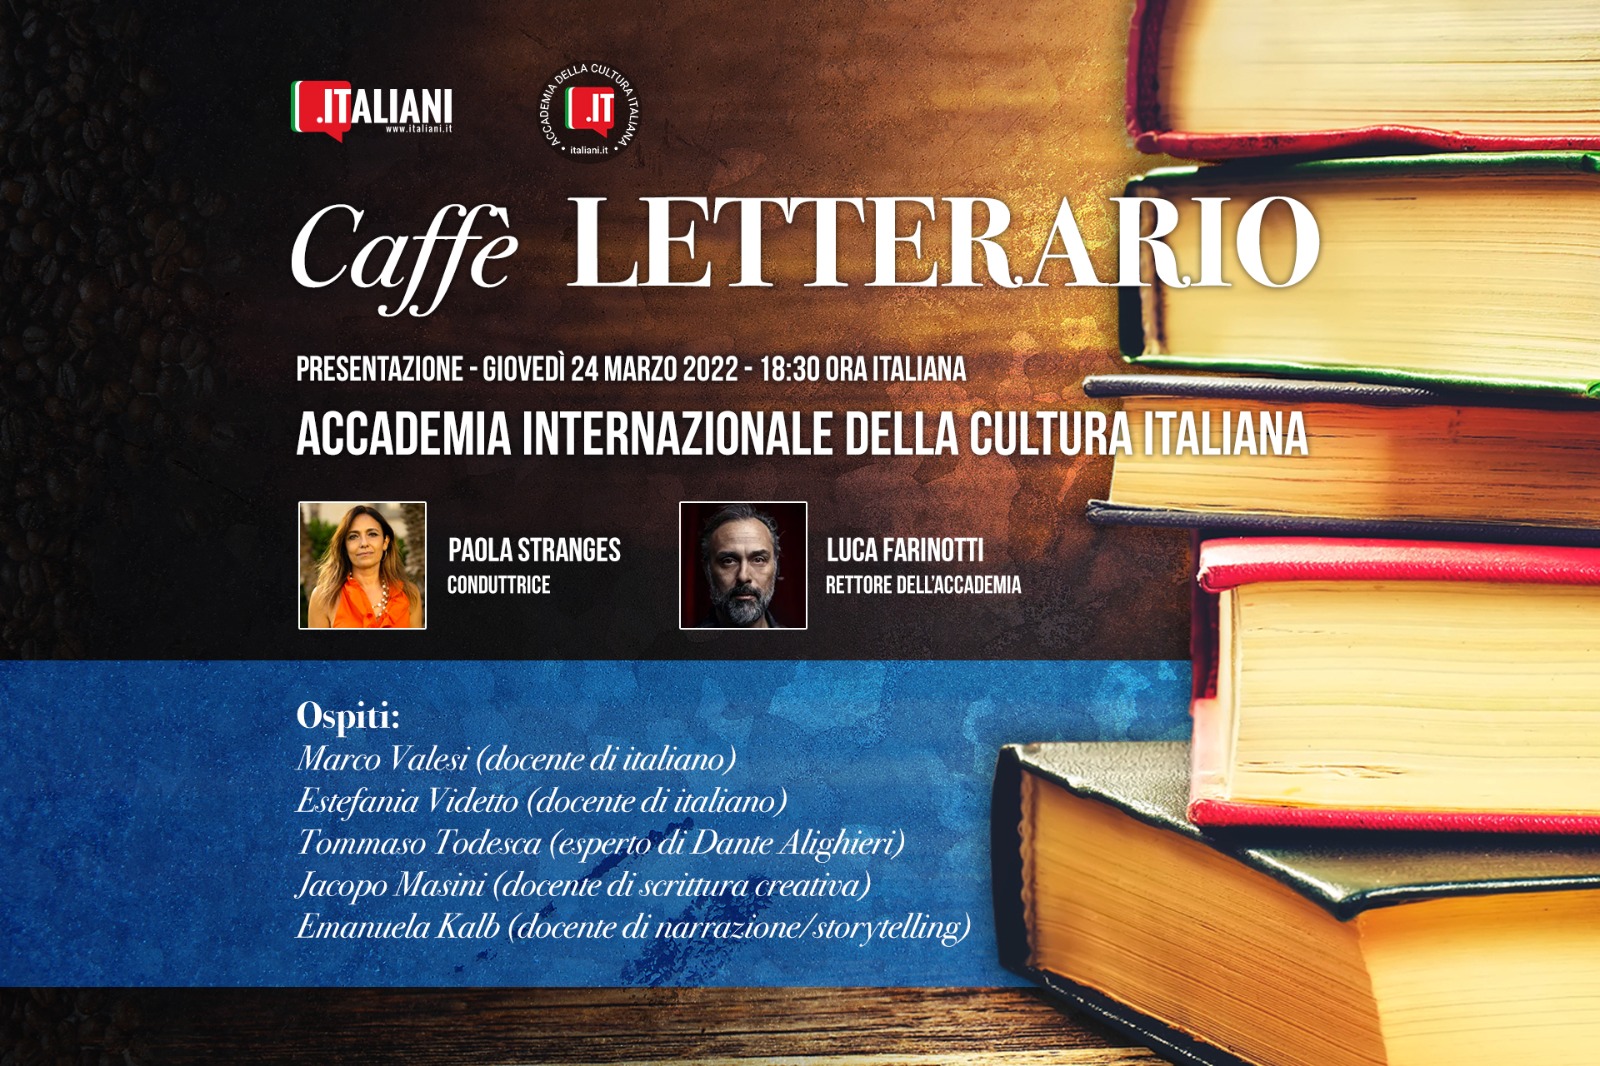 Il 24 marzo la presentazione dell’Accademia Internazionale della Cultura Italiana